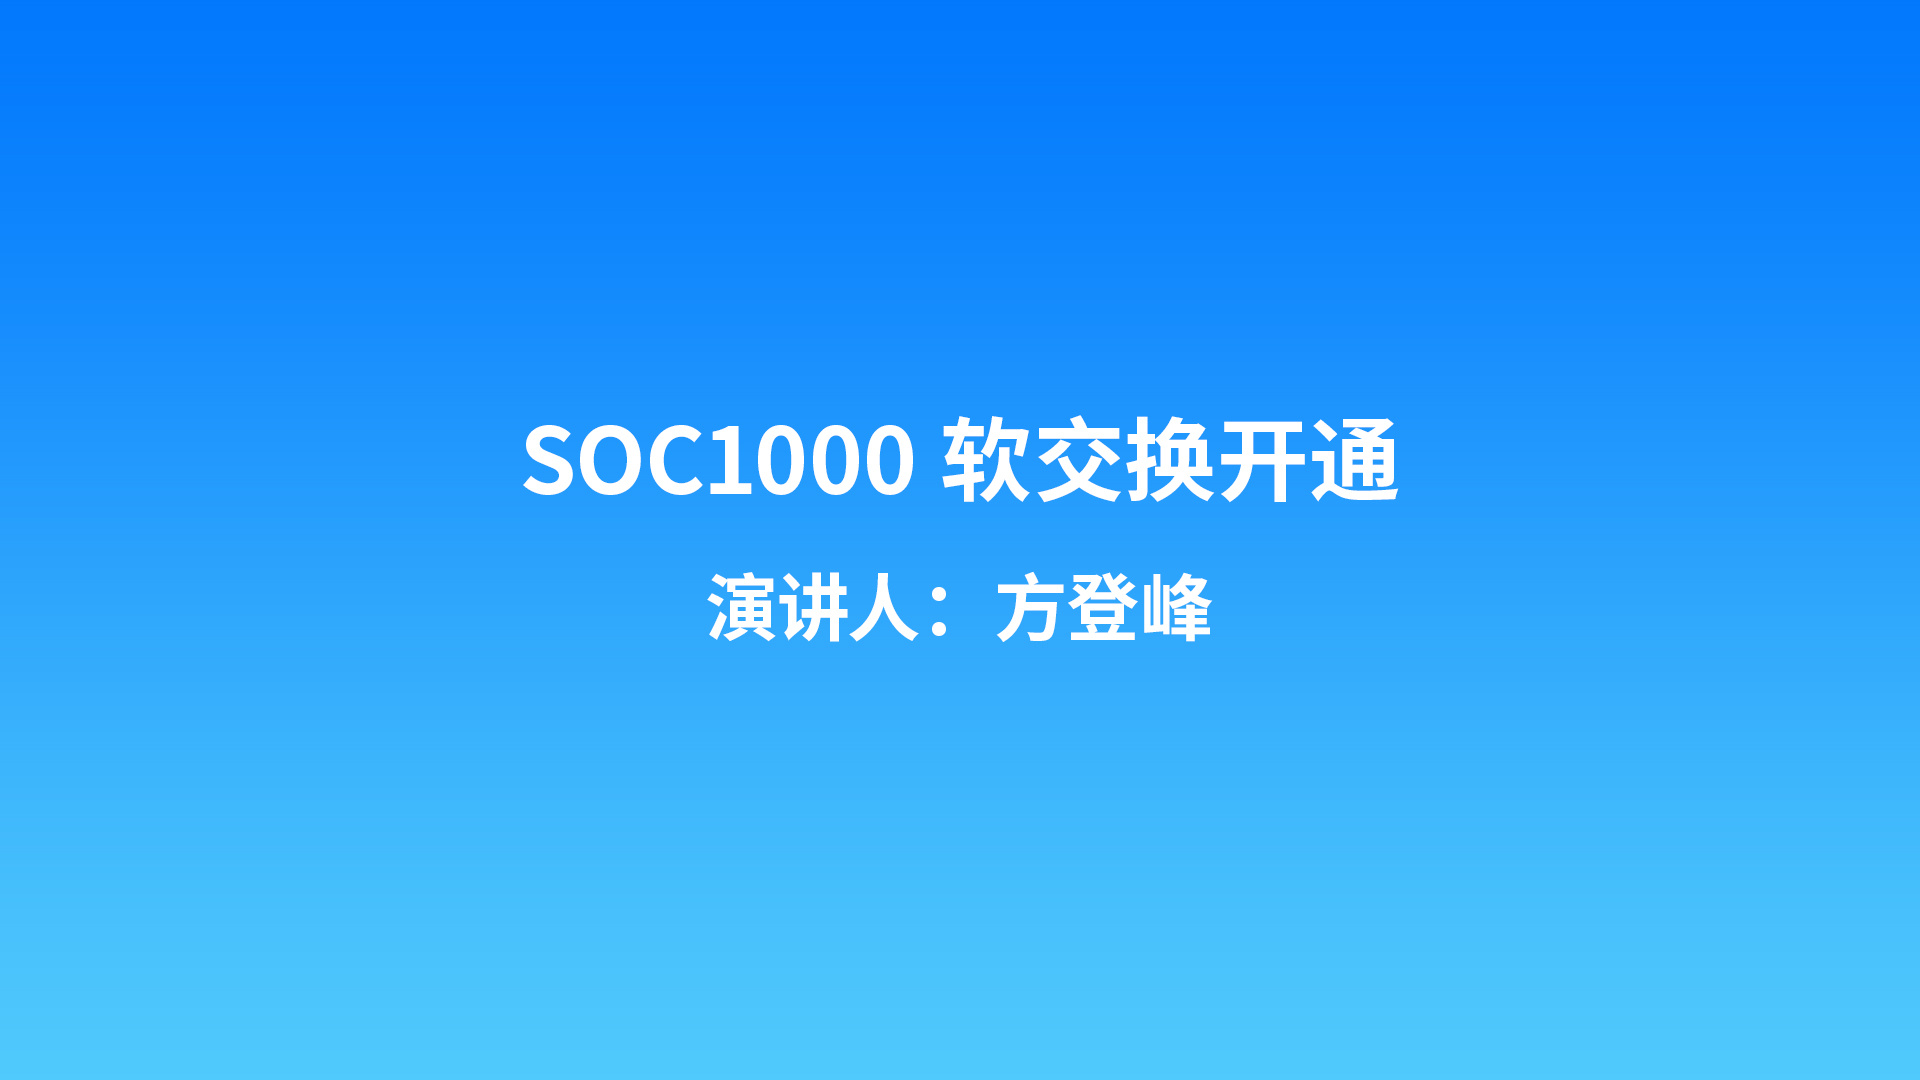 SOC1000软交换开通